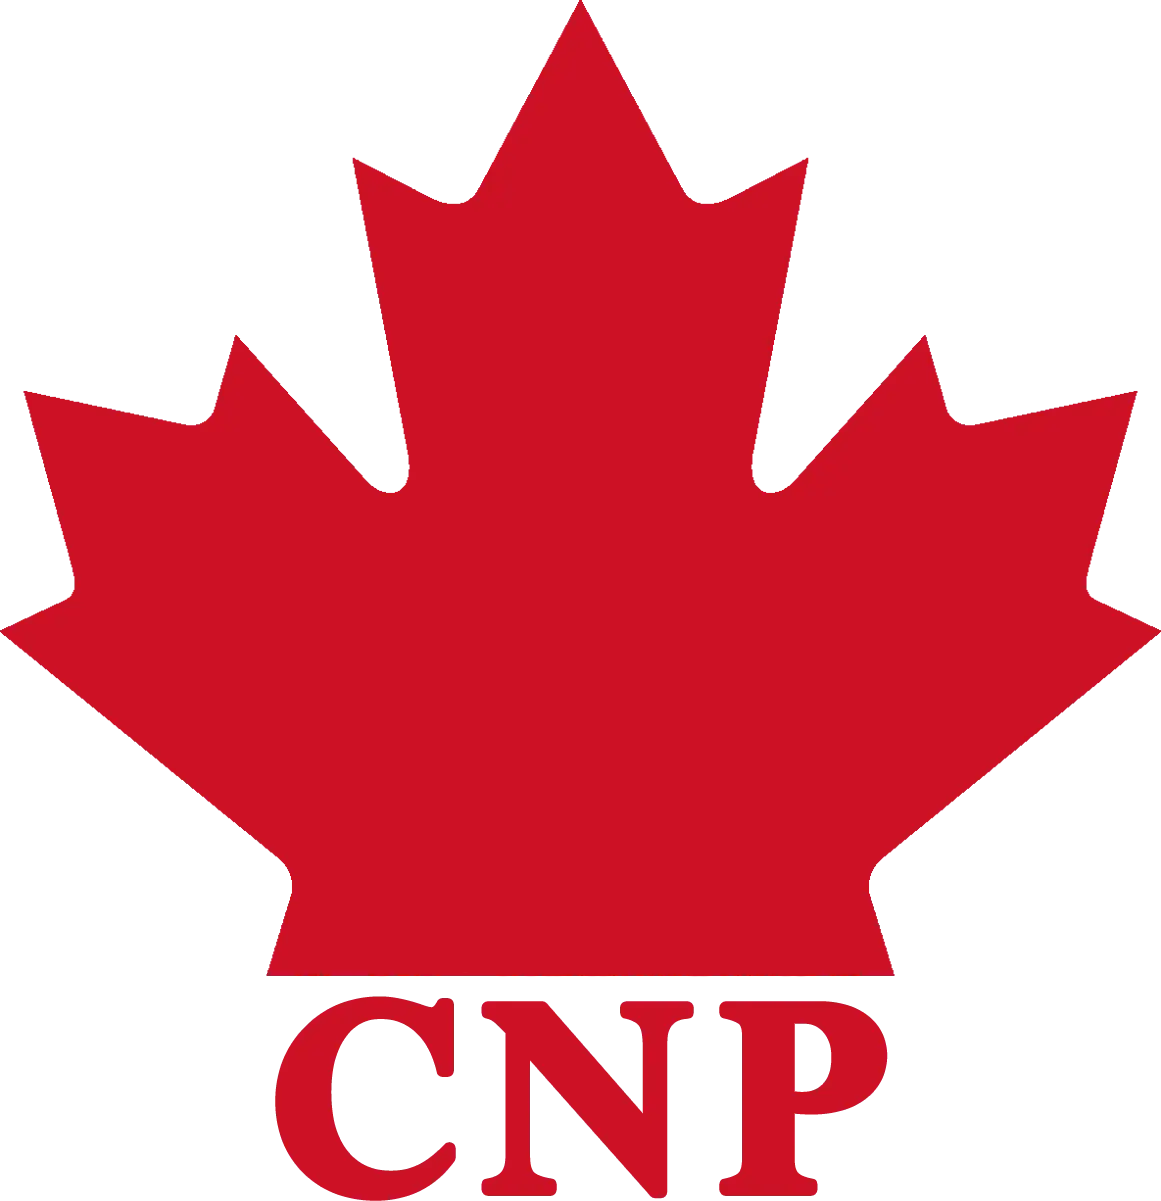 Un logo rouge d'une feuille d'érable au-dessus des lettres "CNP".